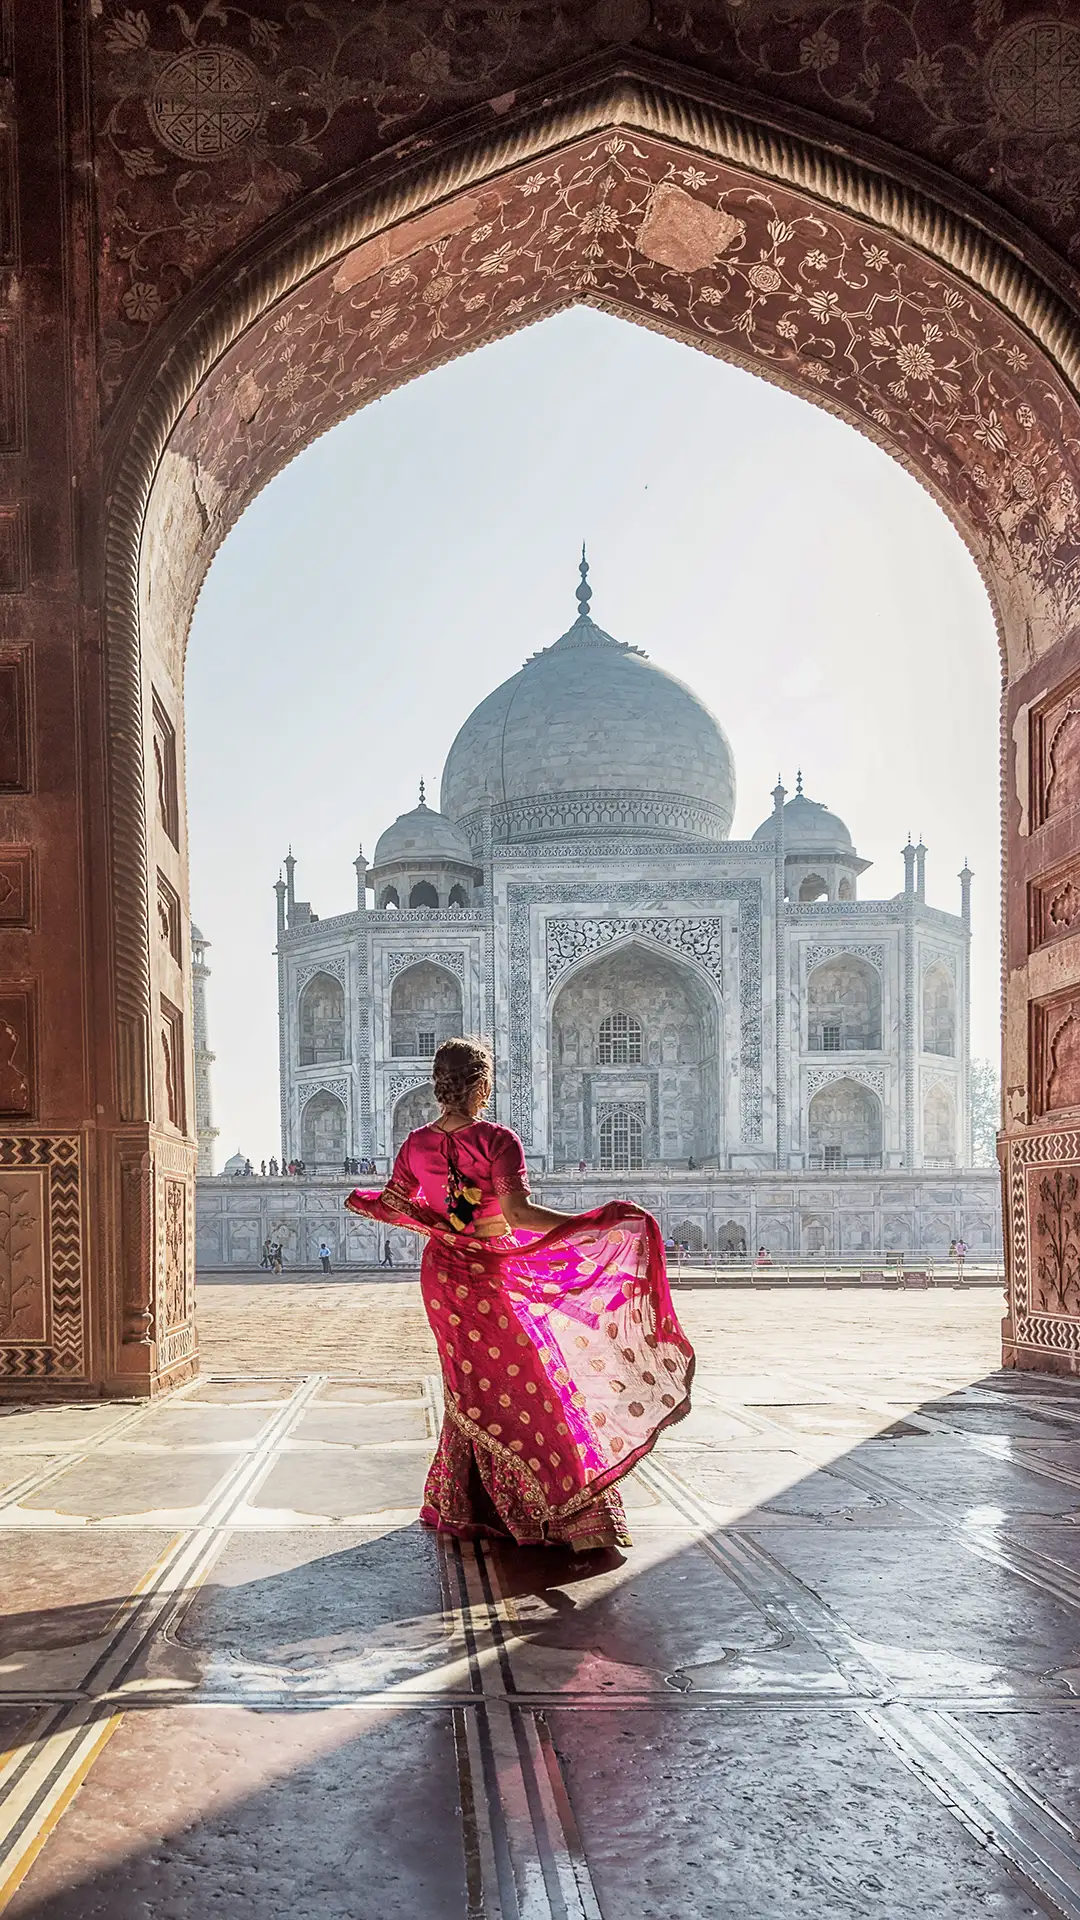 Woman in sari at Taj Mahal.